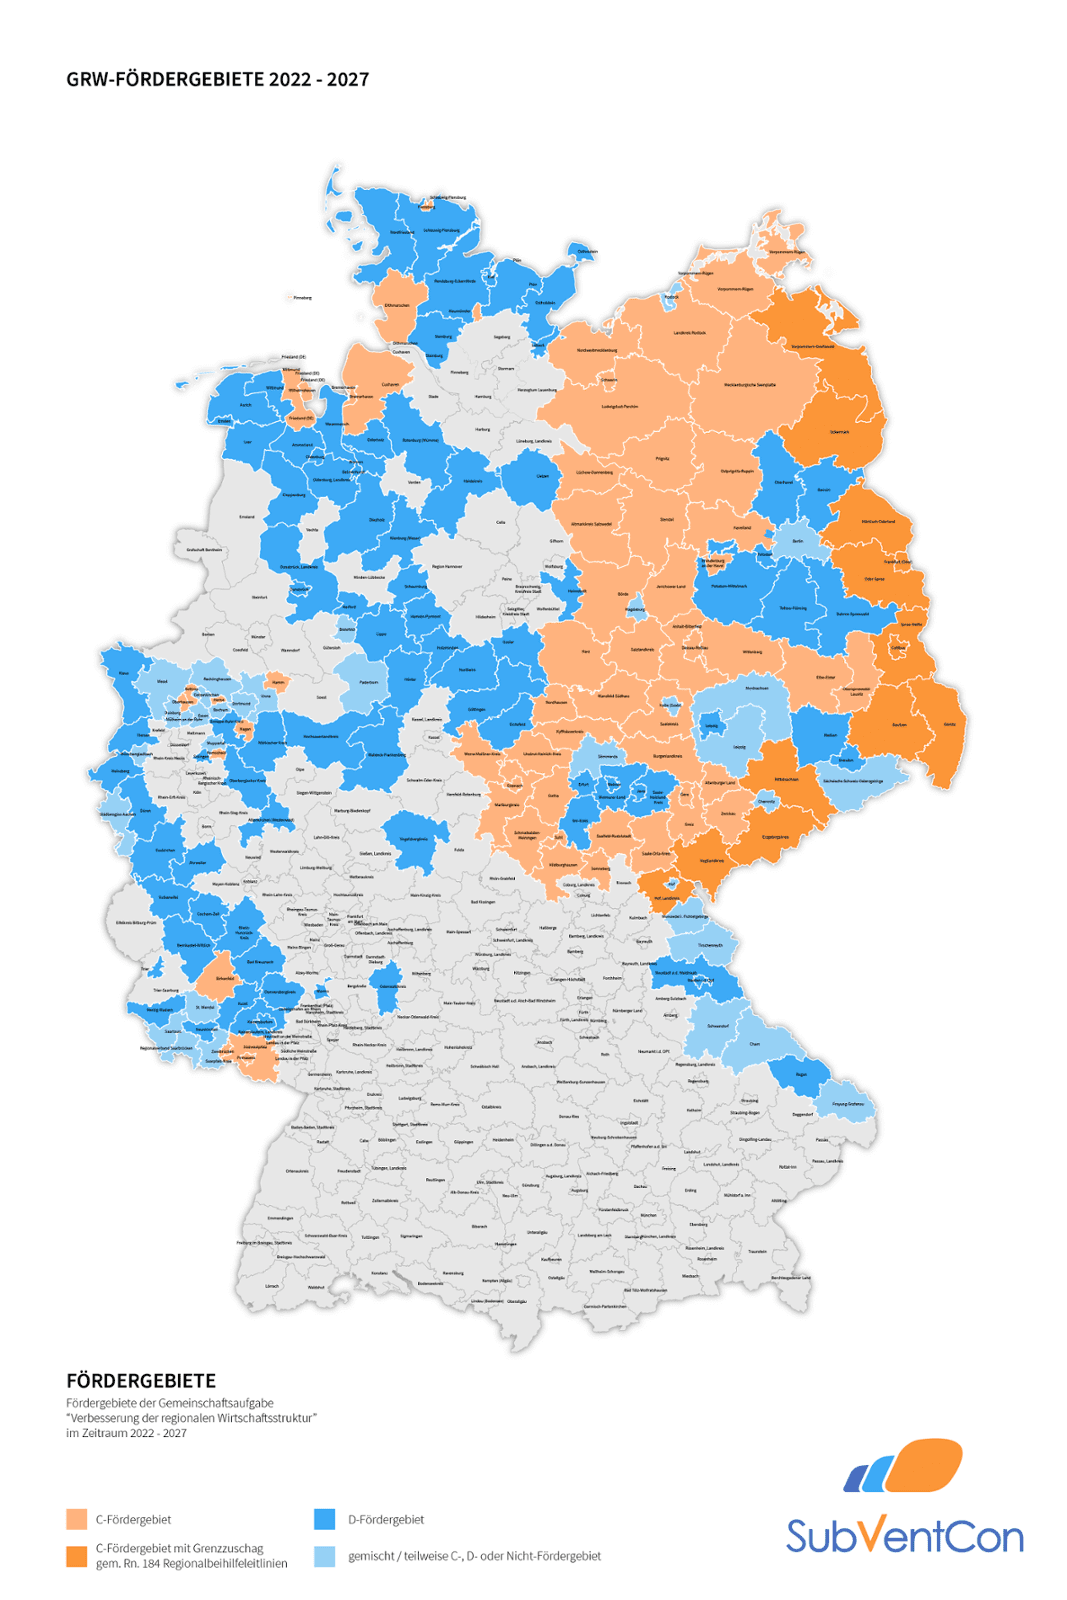 Deutschlandkarte für GRW Fördergebiete in der Periode 2022-2027